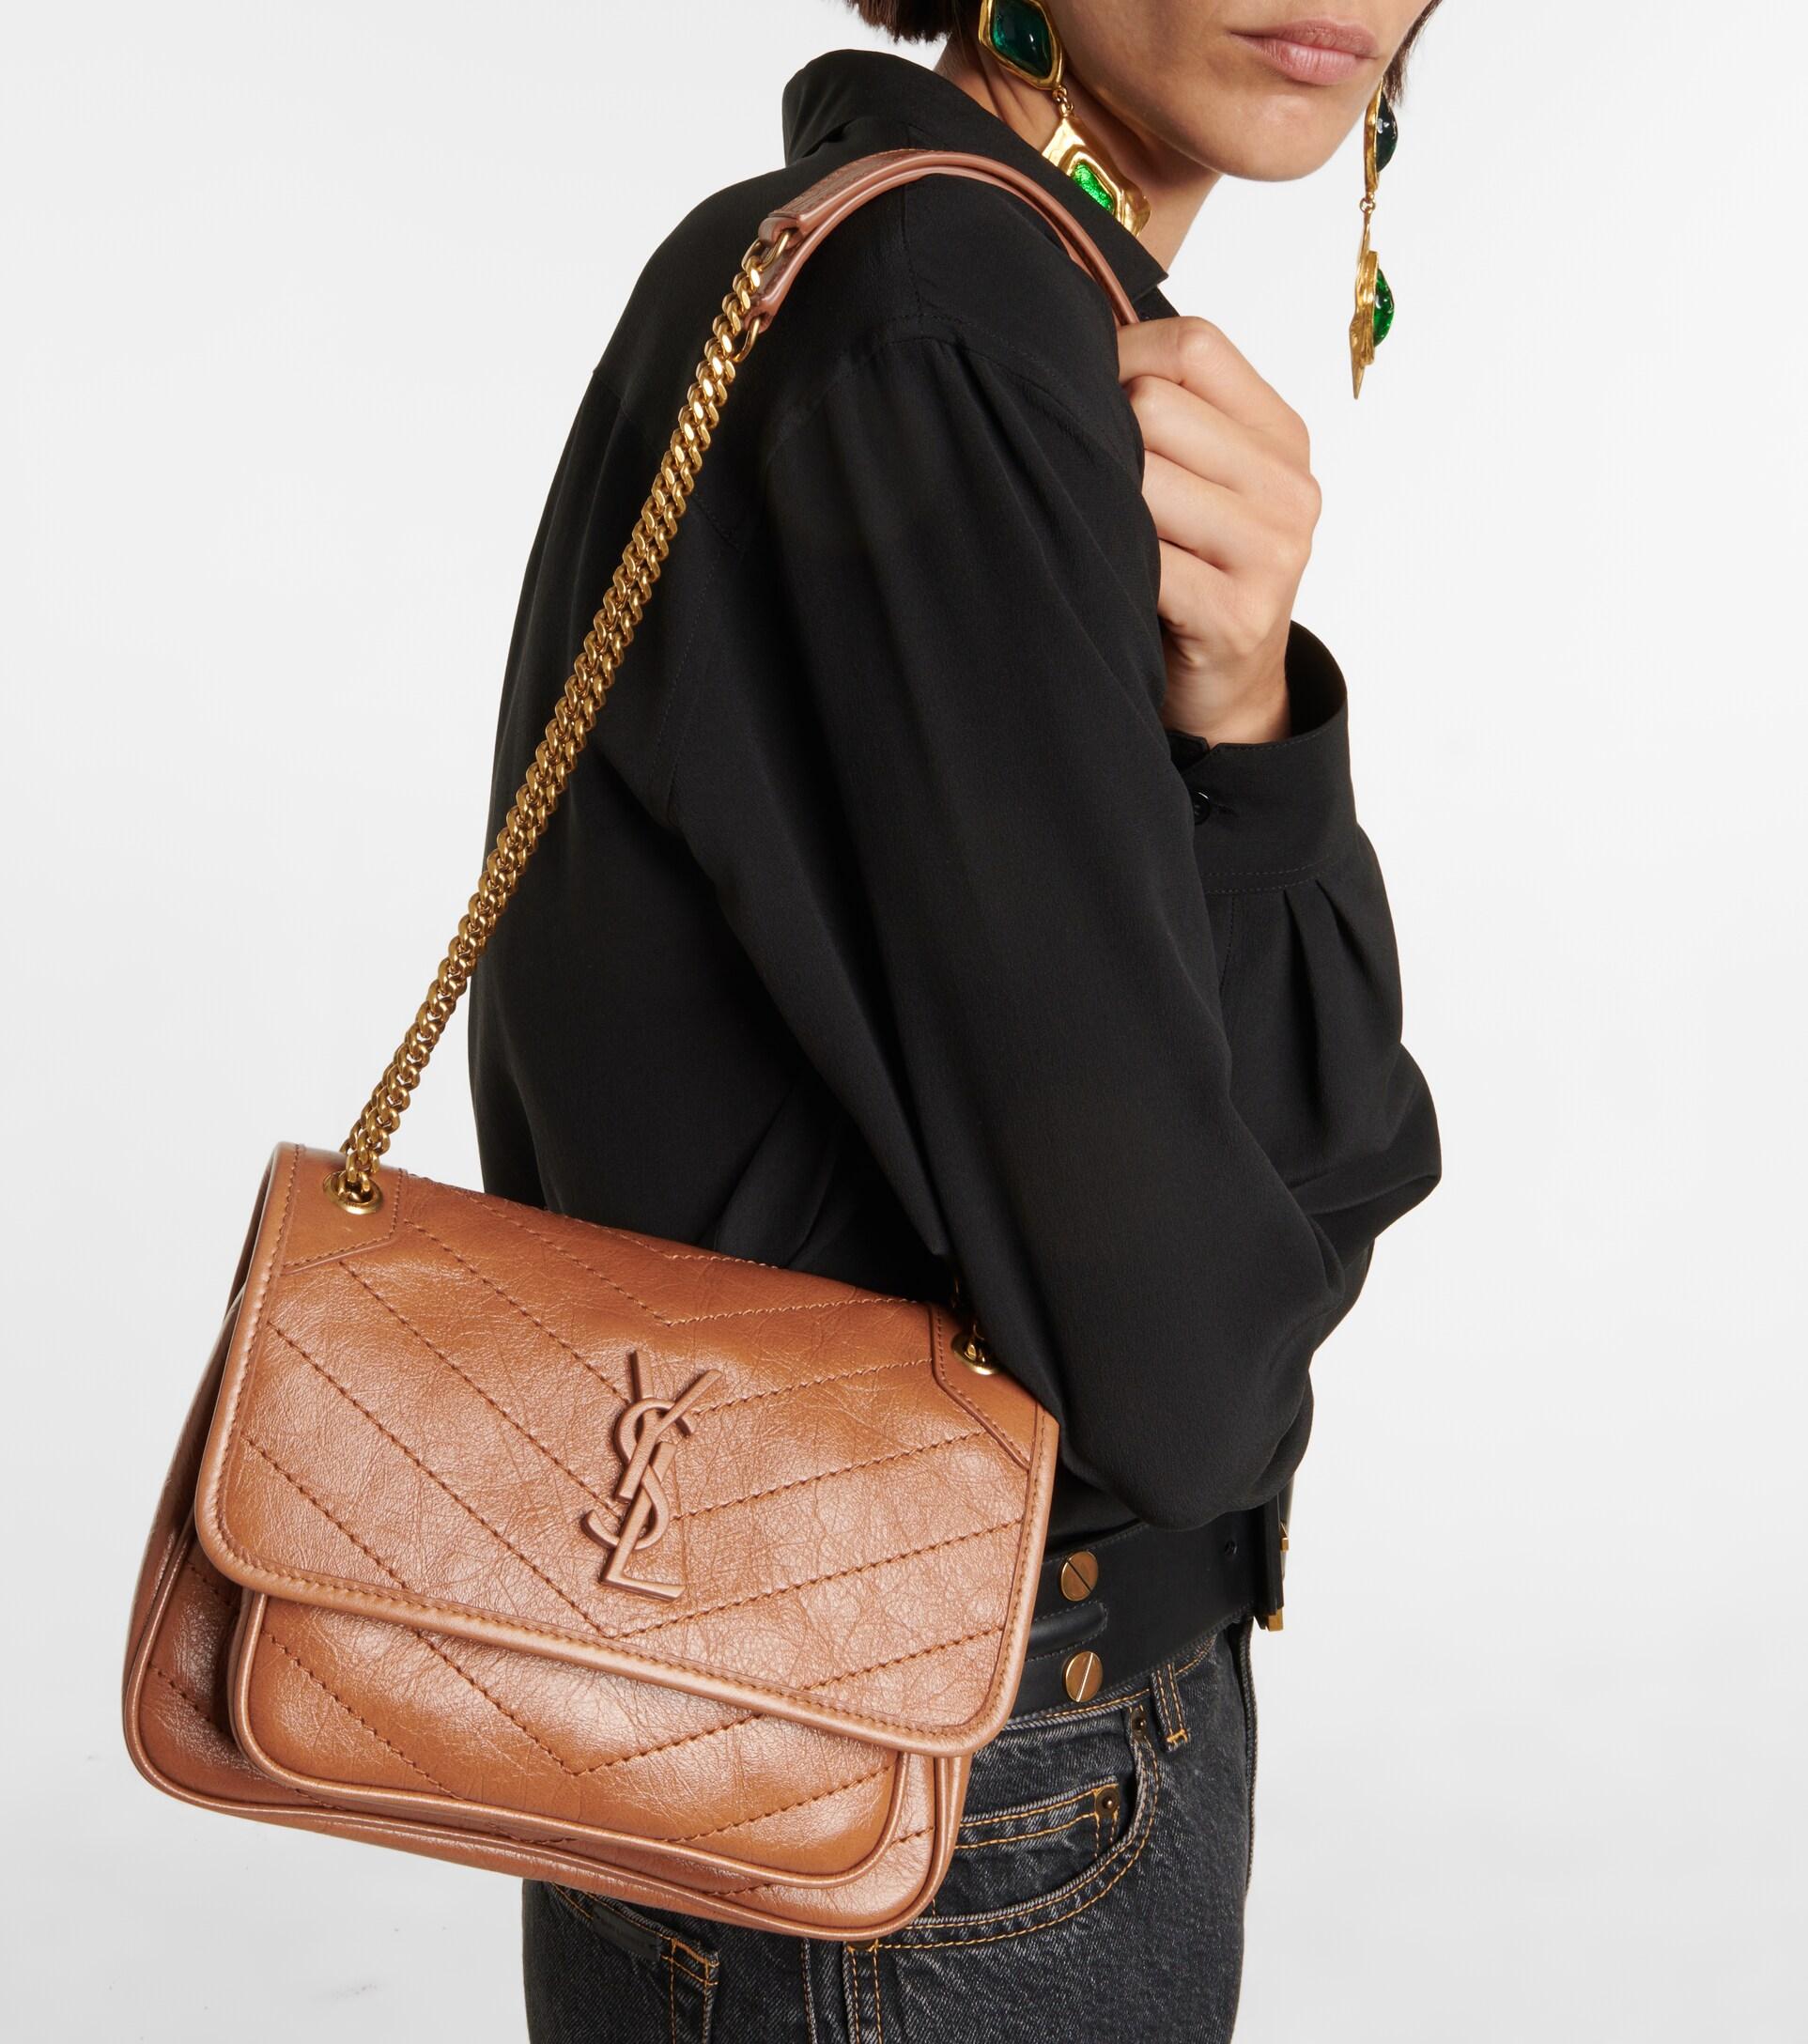 My Caramel YSL Niki….I LOVE this bag! : r/handbags